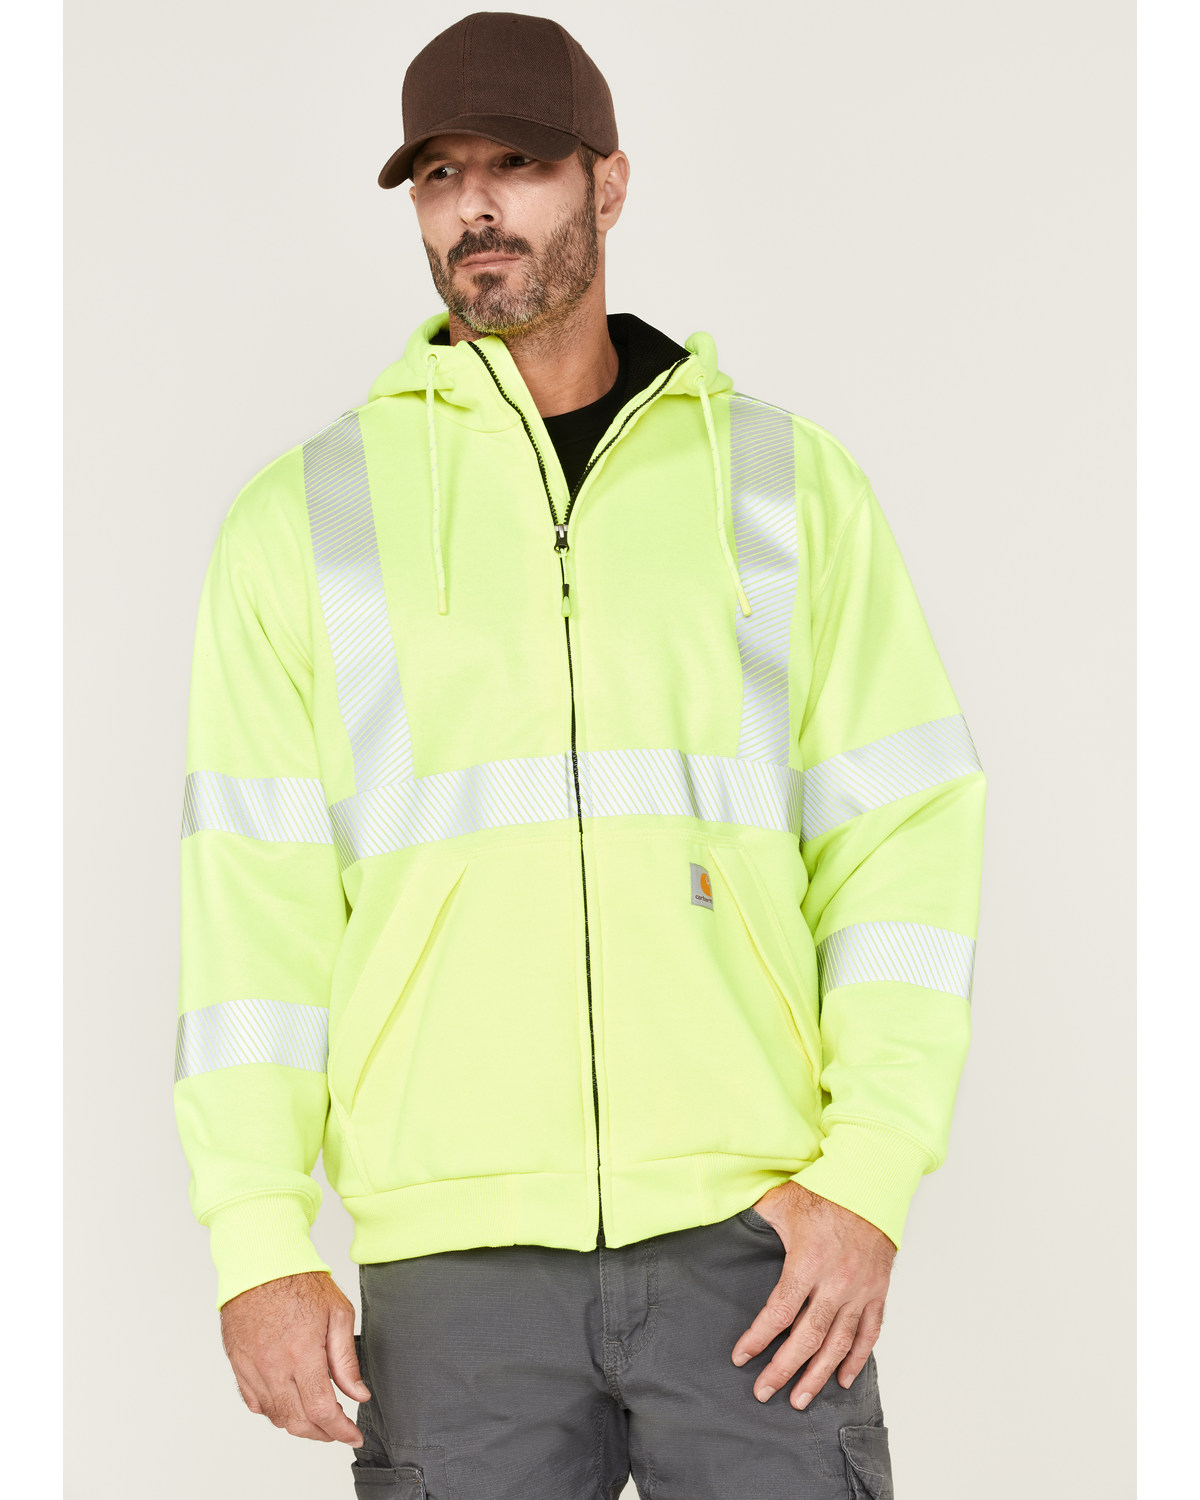 Carhartt Men's Hi-Vis Loose Fit Thermal Full-Zip Hooded Work Jacket